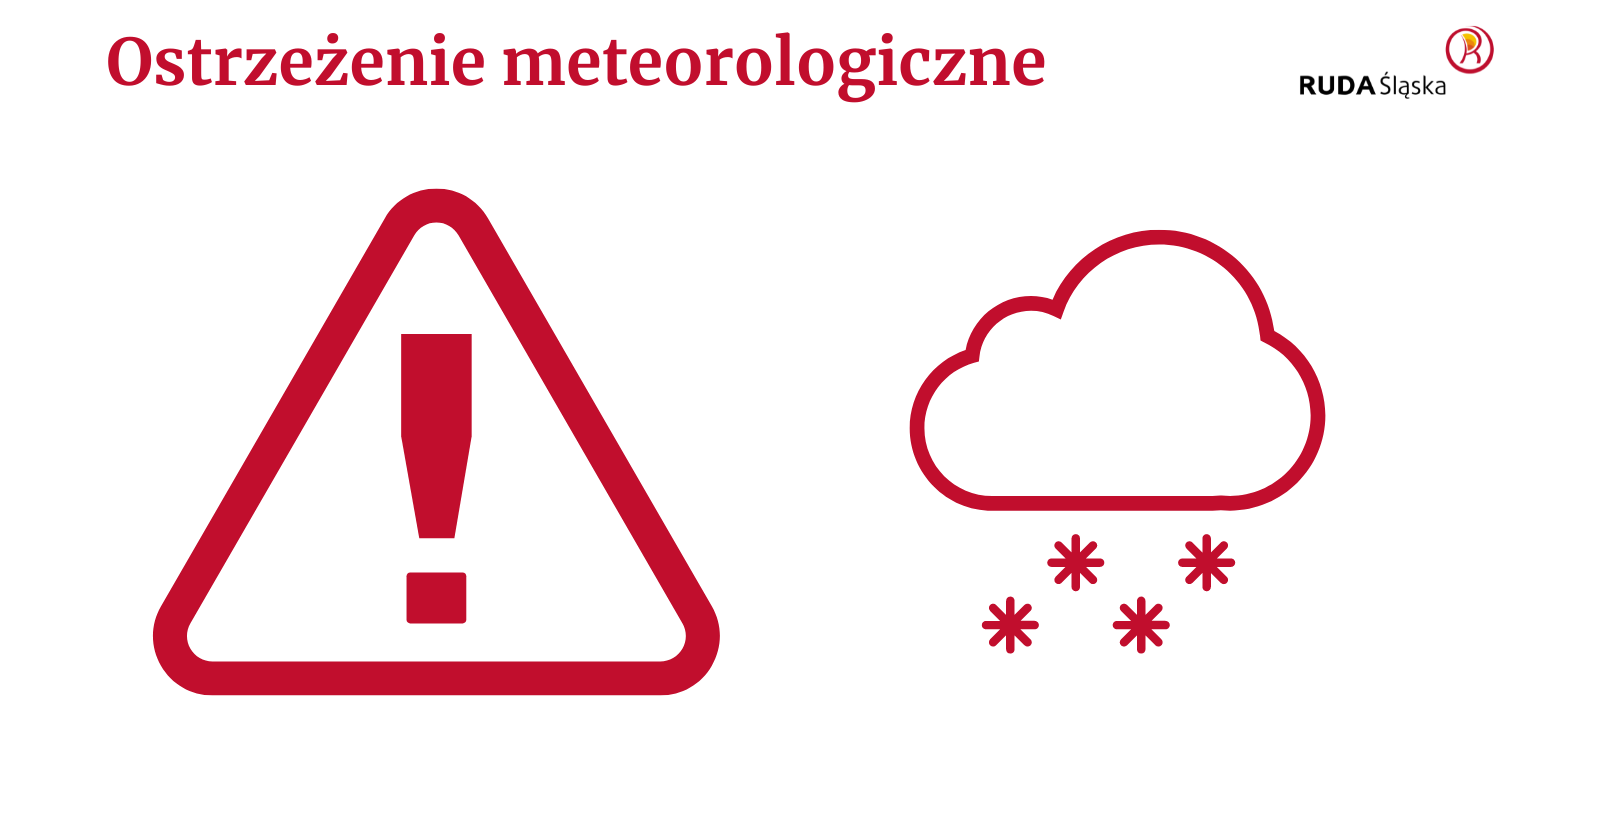 Tekst "ostrzeżenie meteorologiczne", wykrzyknik w trójkącie, symbol chmury i płatków śniegu, logo Rudy Śląskiej.